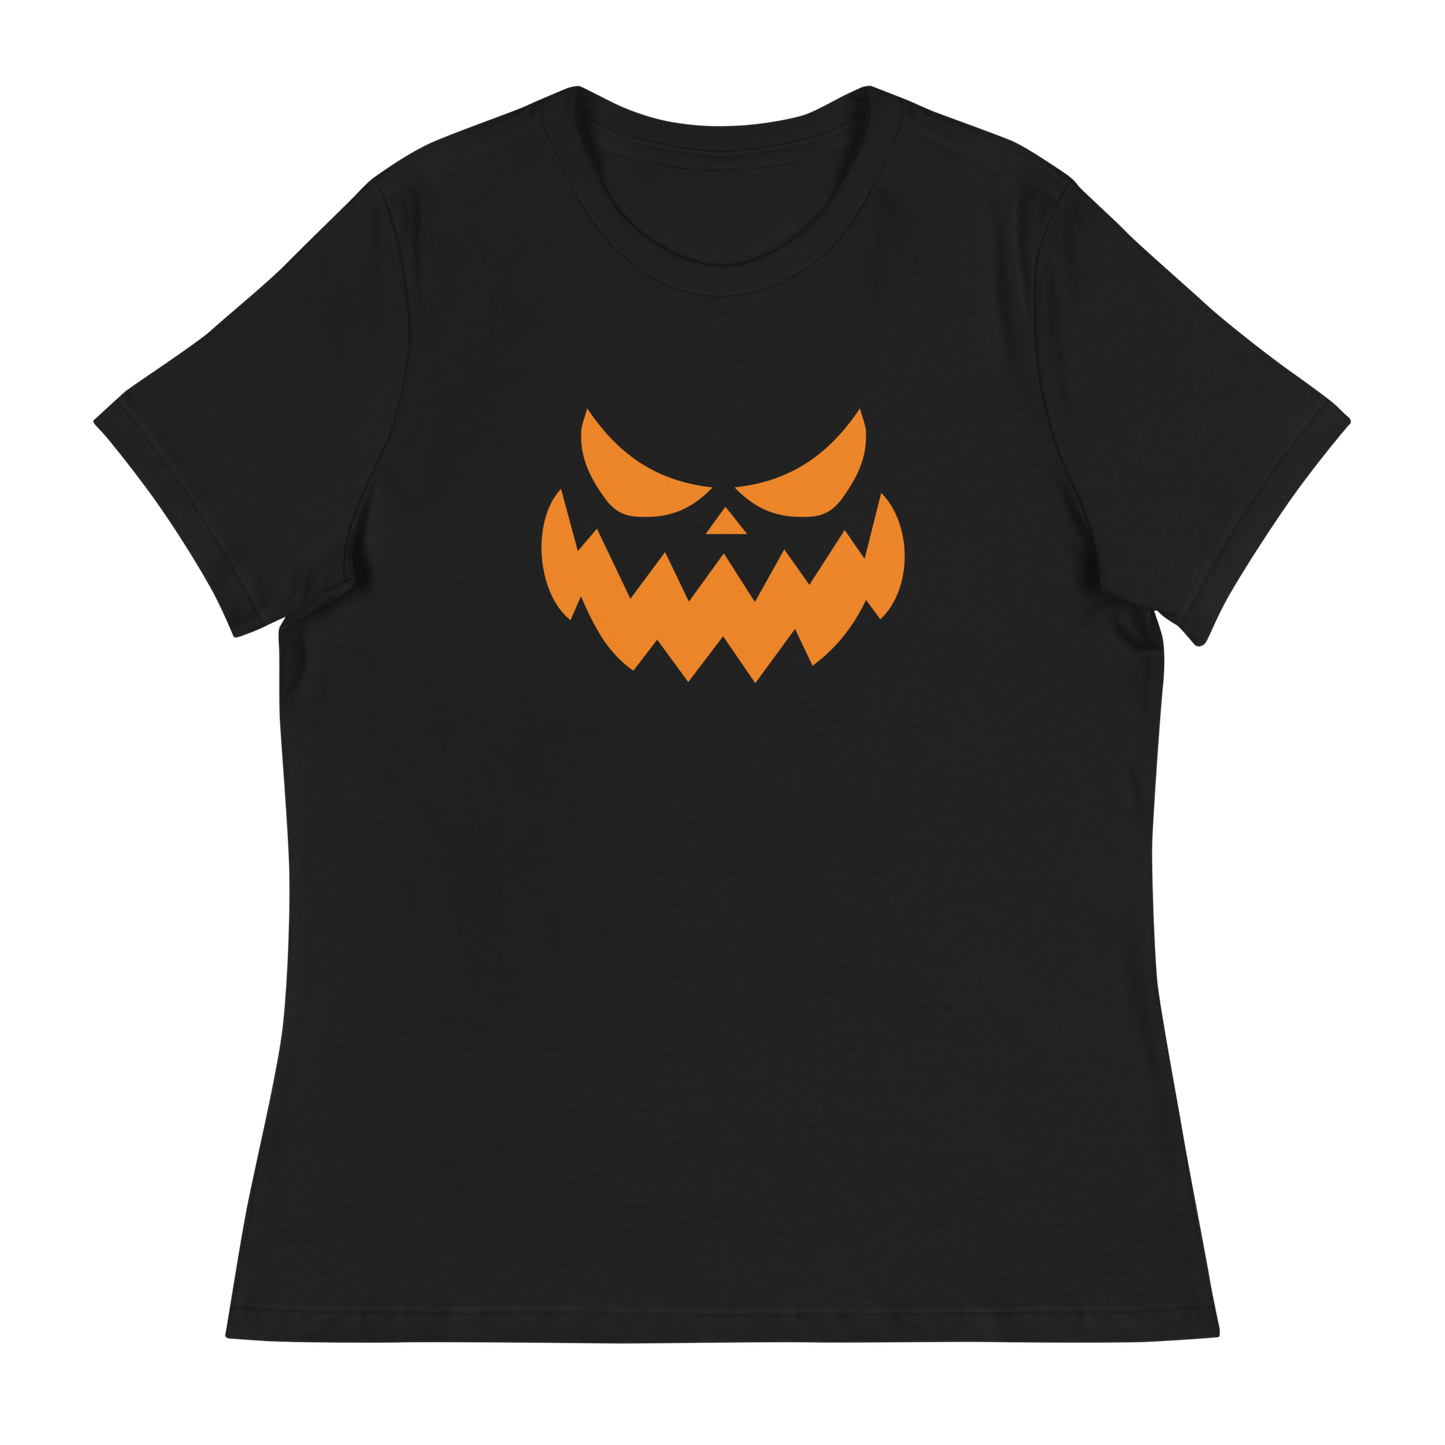 Women's - Halloween Pumpkin Face 4 - Fun T-Shirt